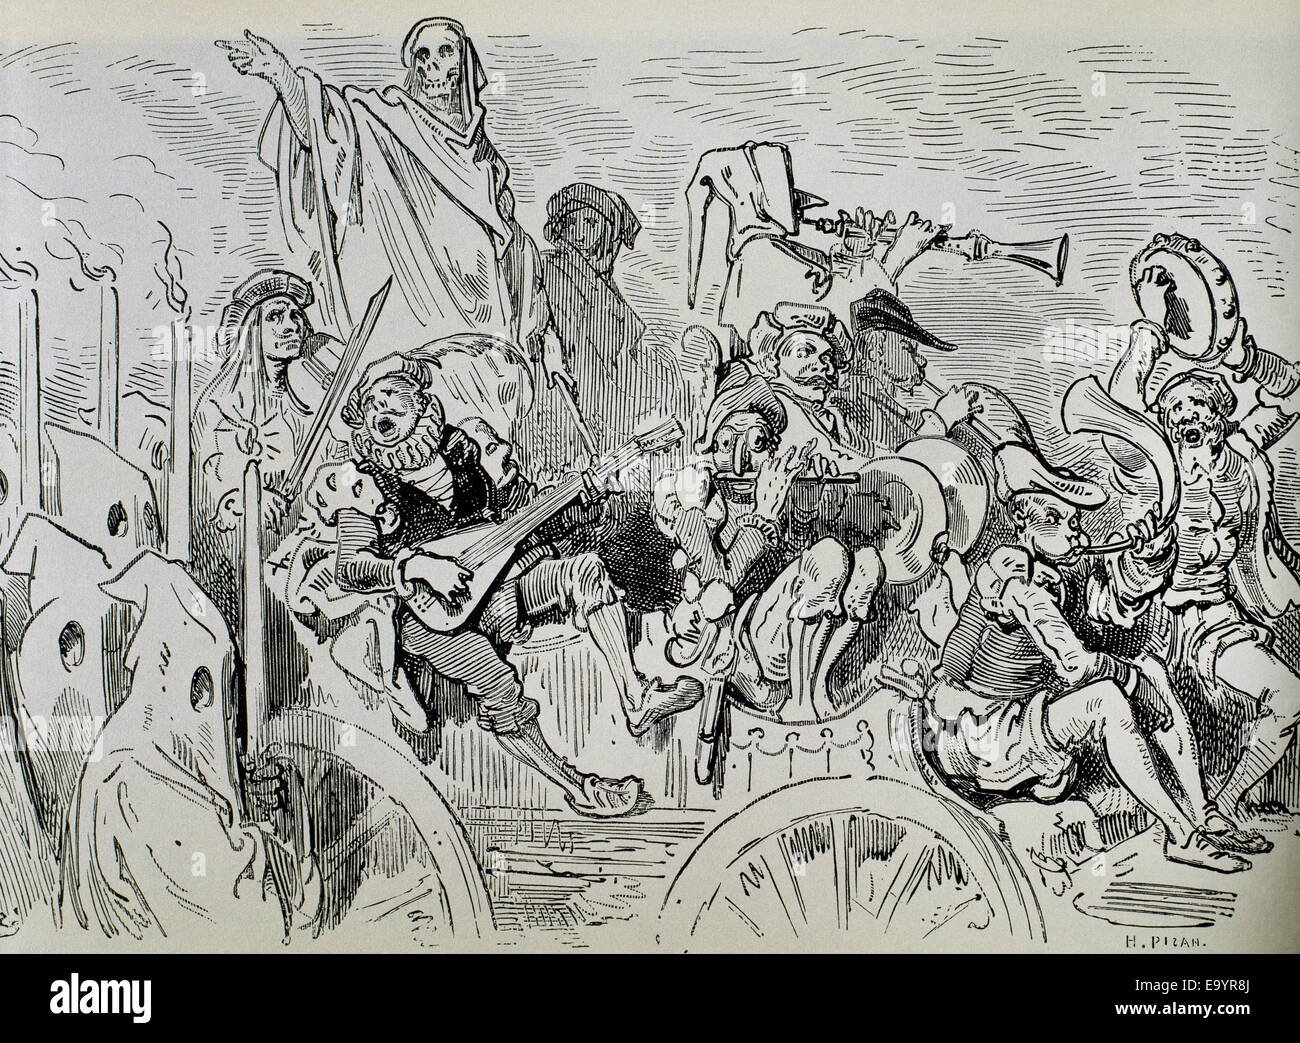 Don Quichotte. Roman espagnol de Miguel de Cervantes Saavedra (1547-1616). Gravure de Gustave Dore, 19e siècle. Banque D'Images